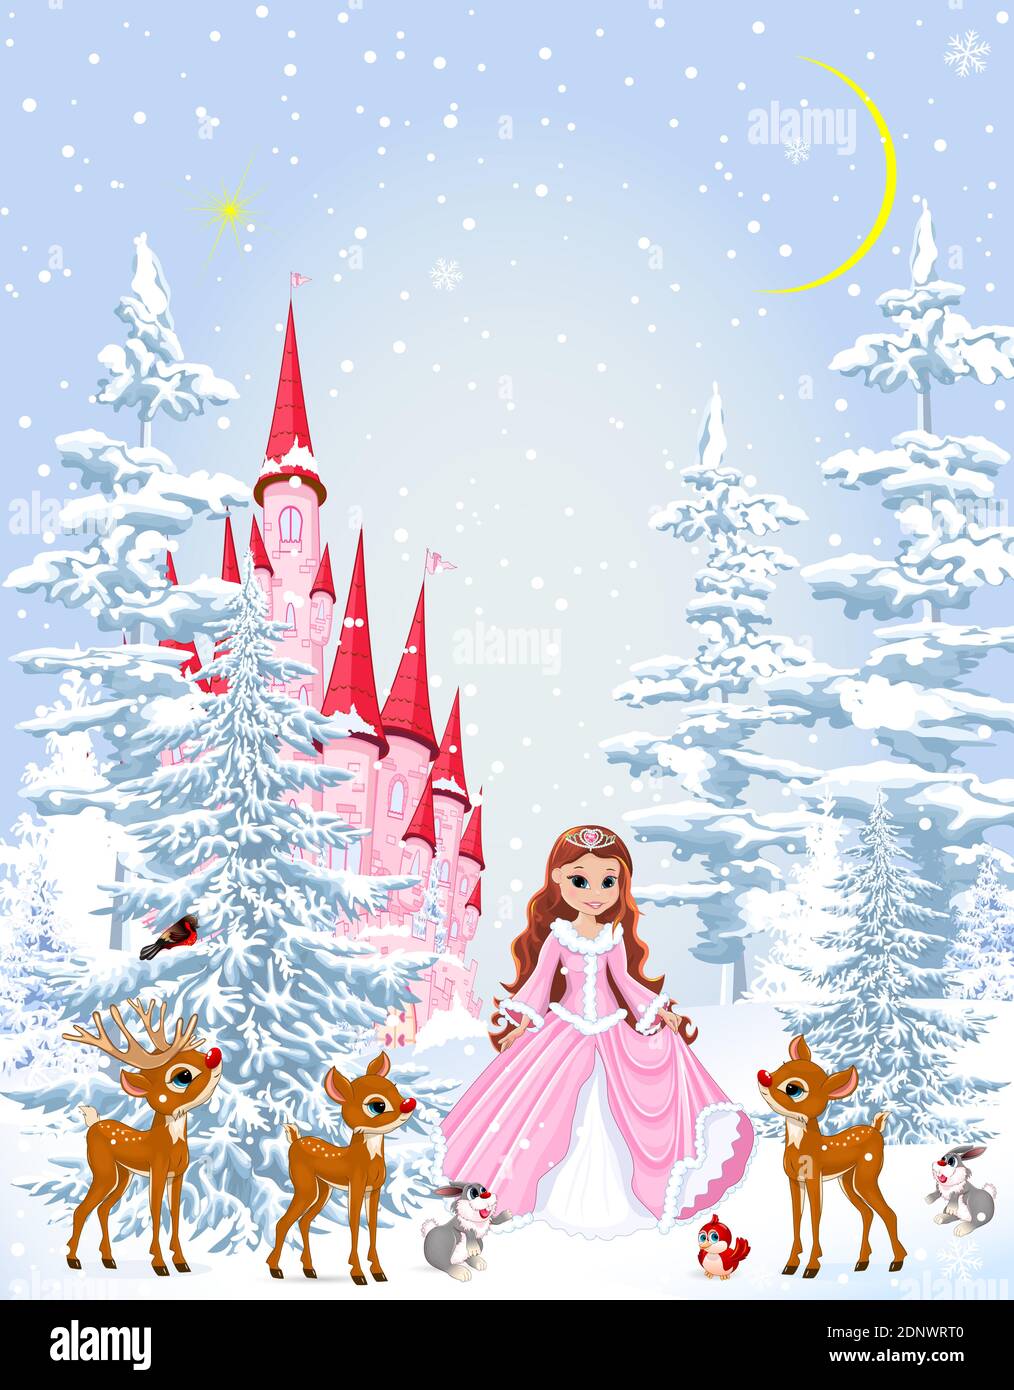 Kleine Prinzessin in einem rosa Kleid im Winterwald. Prinzessin mit Tieren auf dem Hintergrund einer Burg und einem verschneiten Wald. Winter verschneite Nacht. Stock Vektor